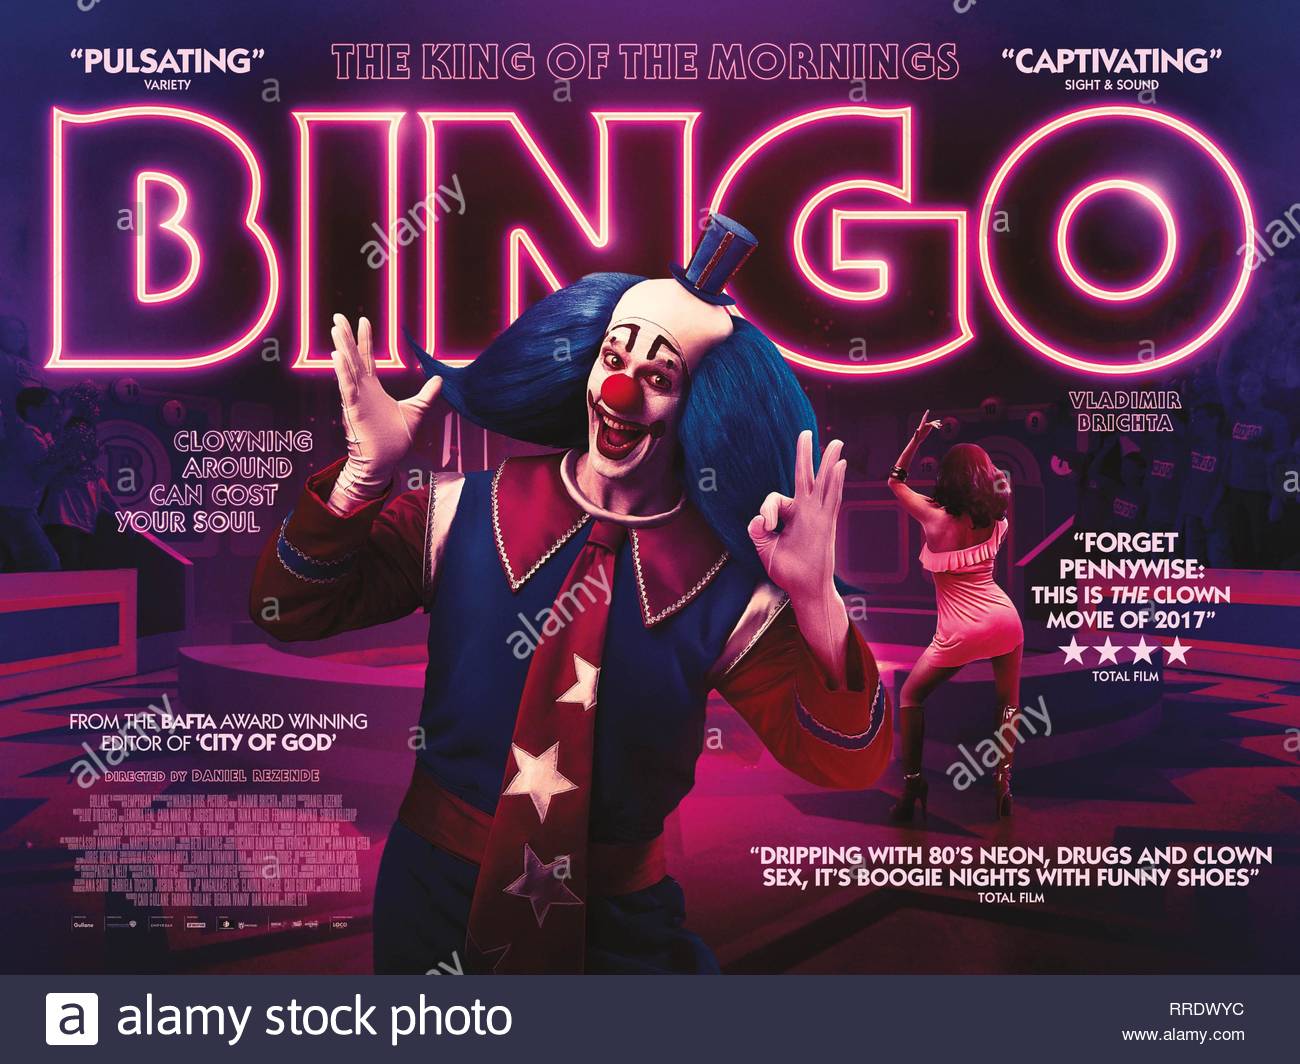 bingo el rey de las mananas vladimir brichta poster 2017 rrdwyc